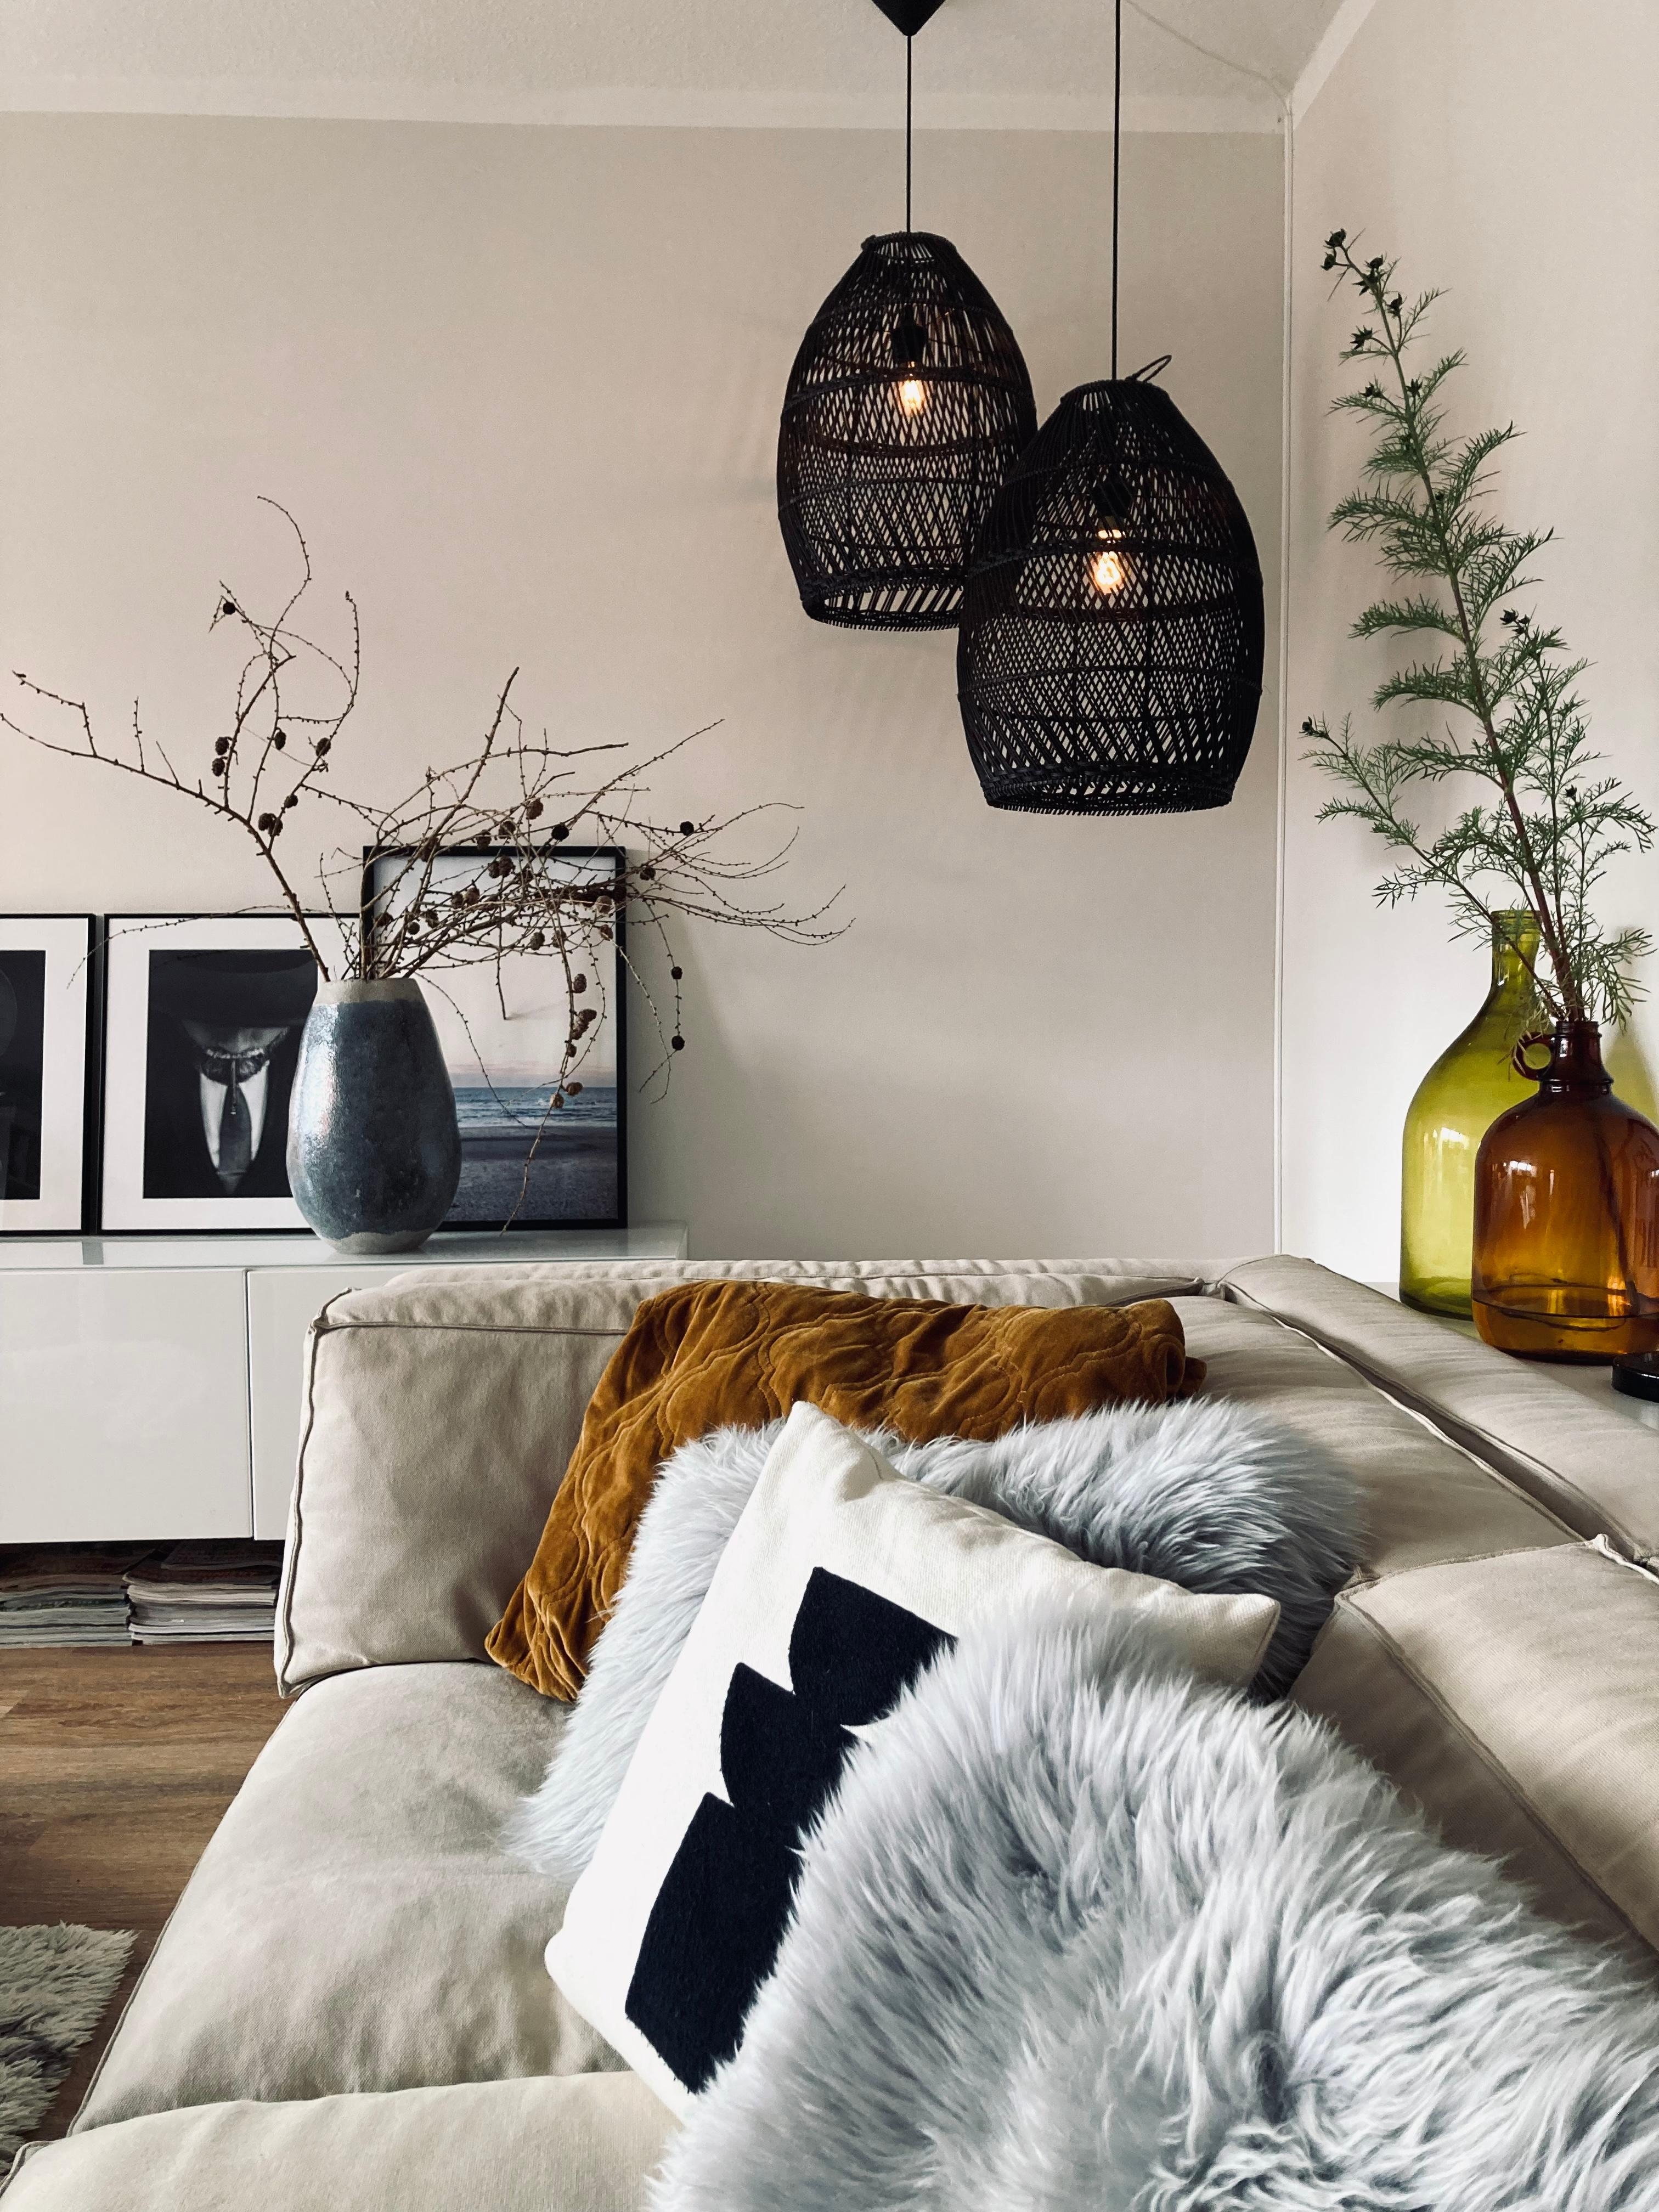 Gemütlicher Rückzug #livingroom #interior #wohnzimmer #couchstyle #interieurinspiration